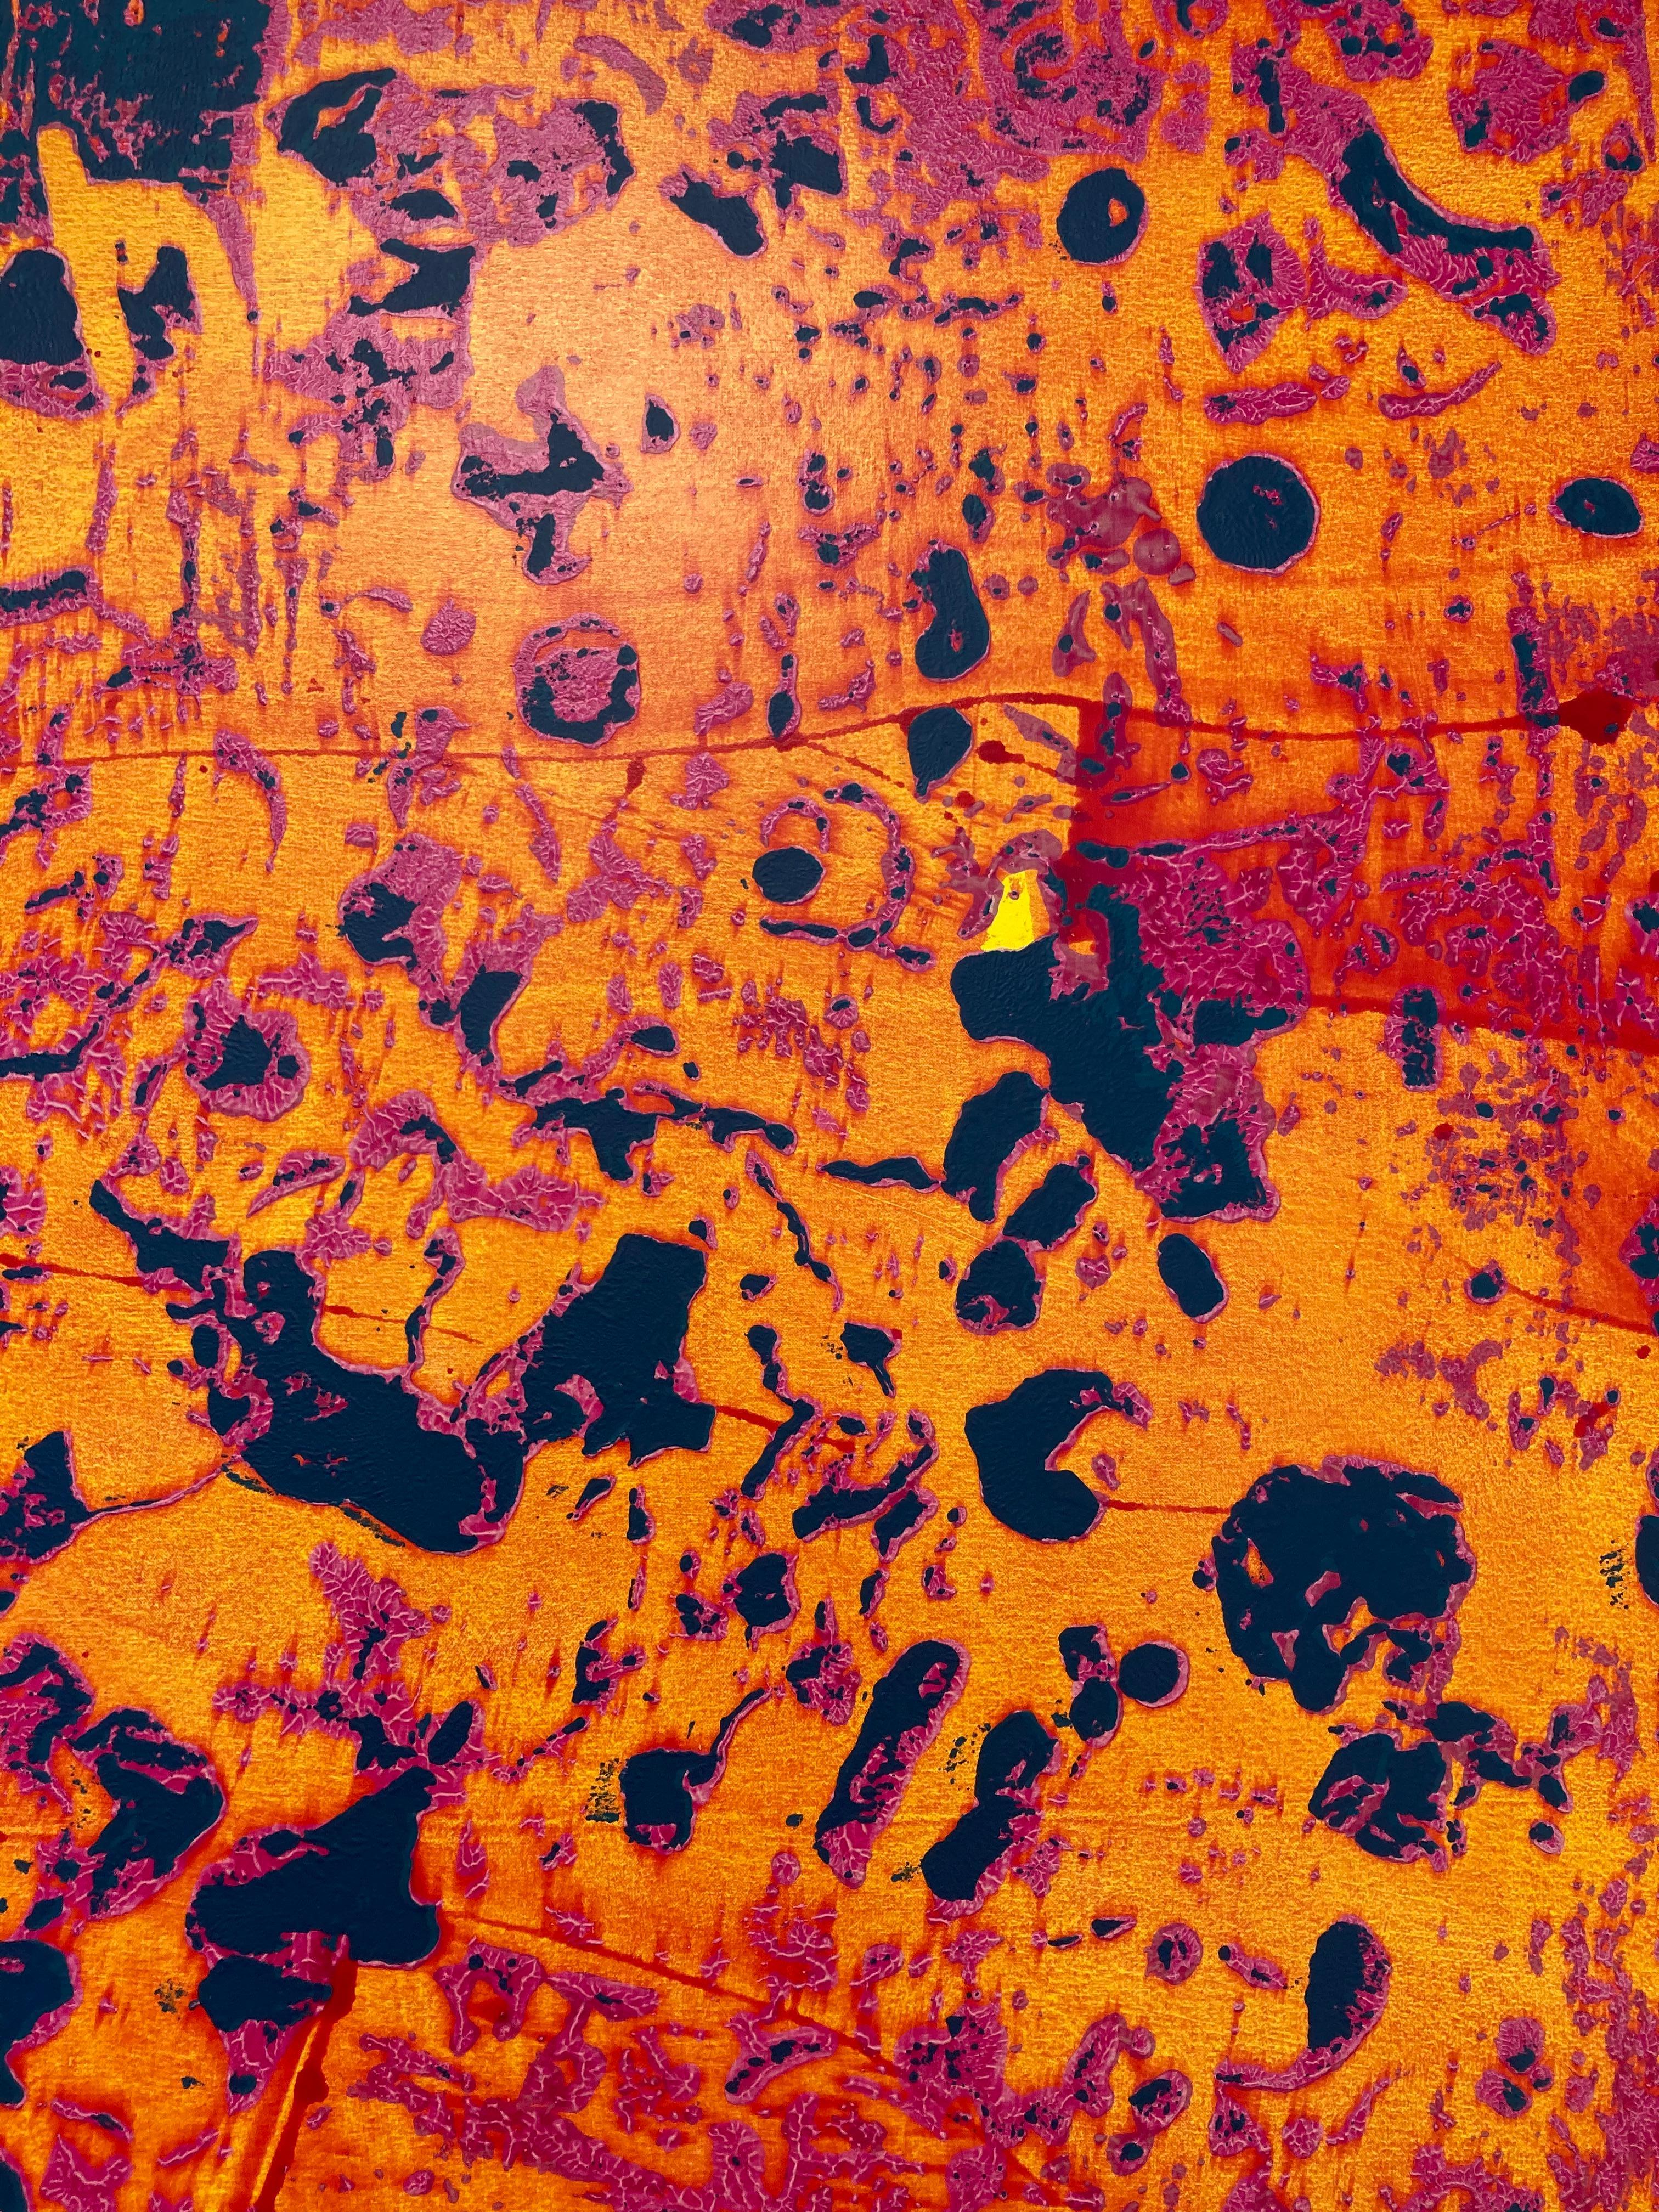 Großes vertikales abstraktes Gemälde in leuchtendem Orange, Gelb, Rosa und Marineblau, P20-0105 2